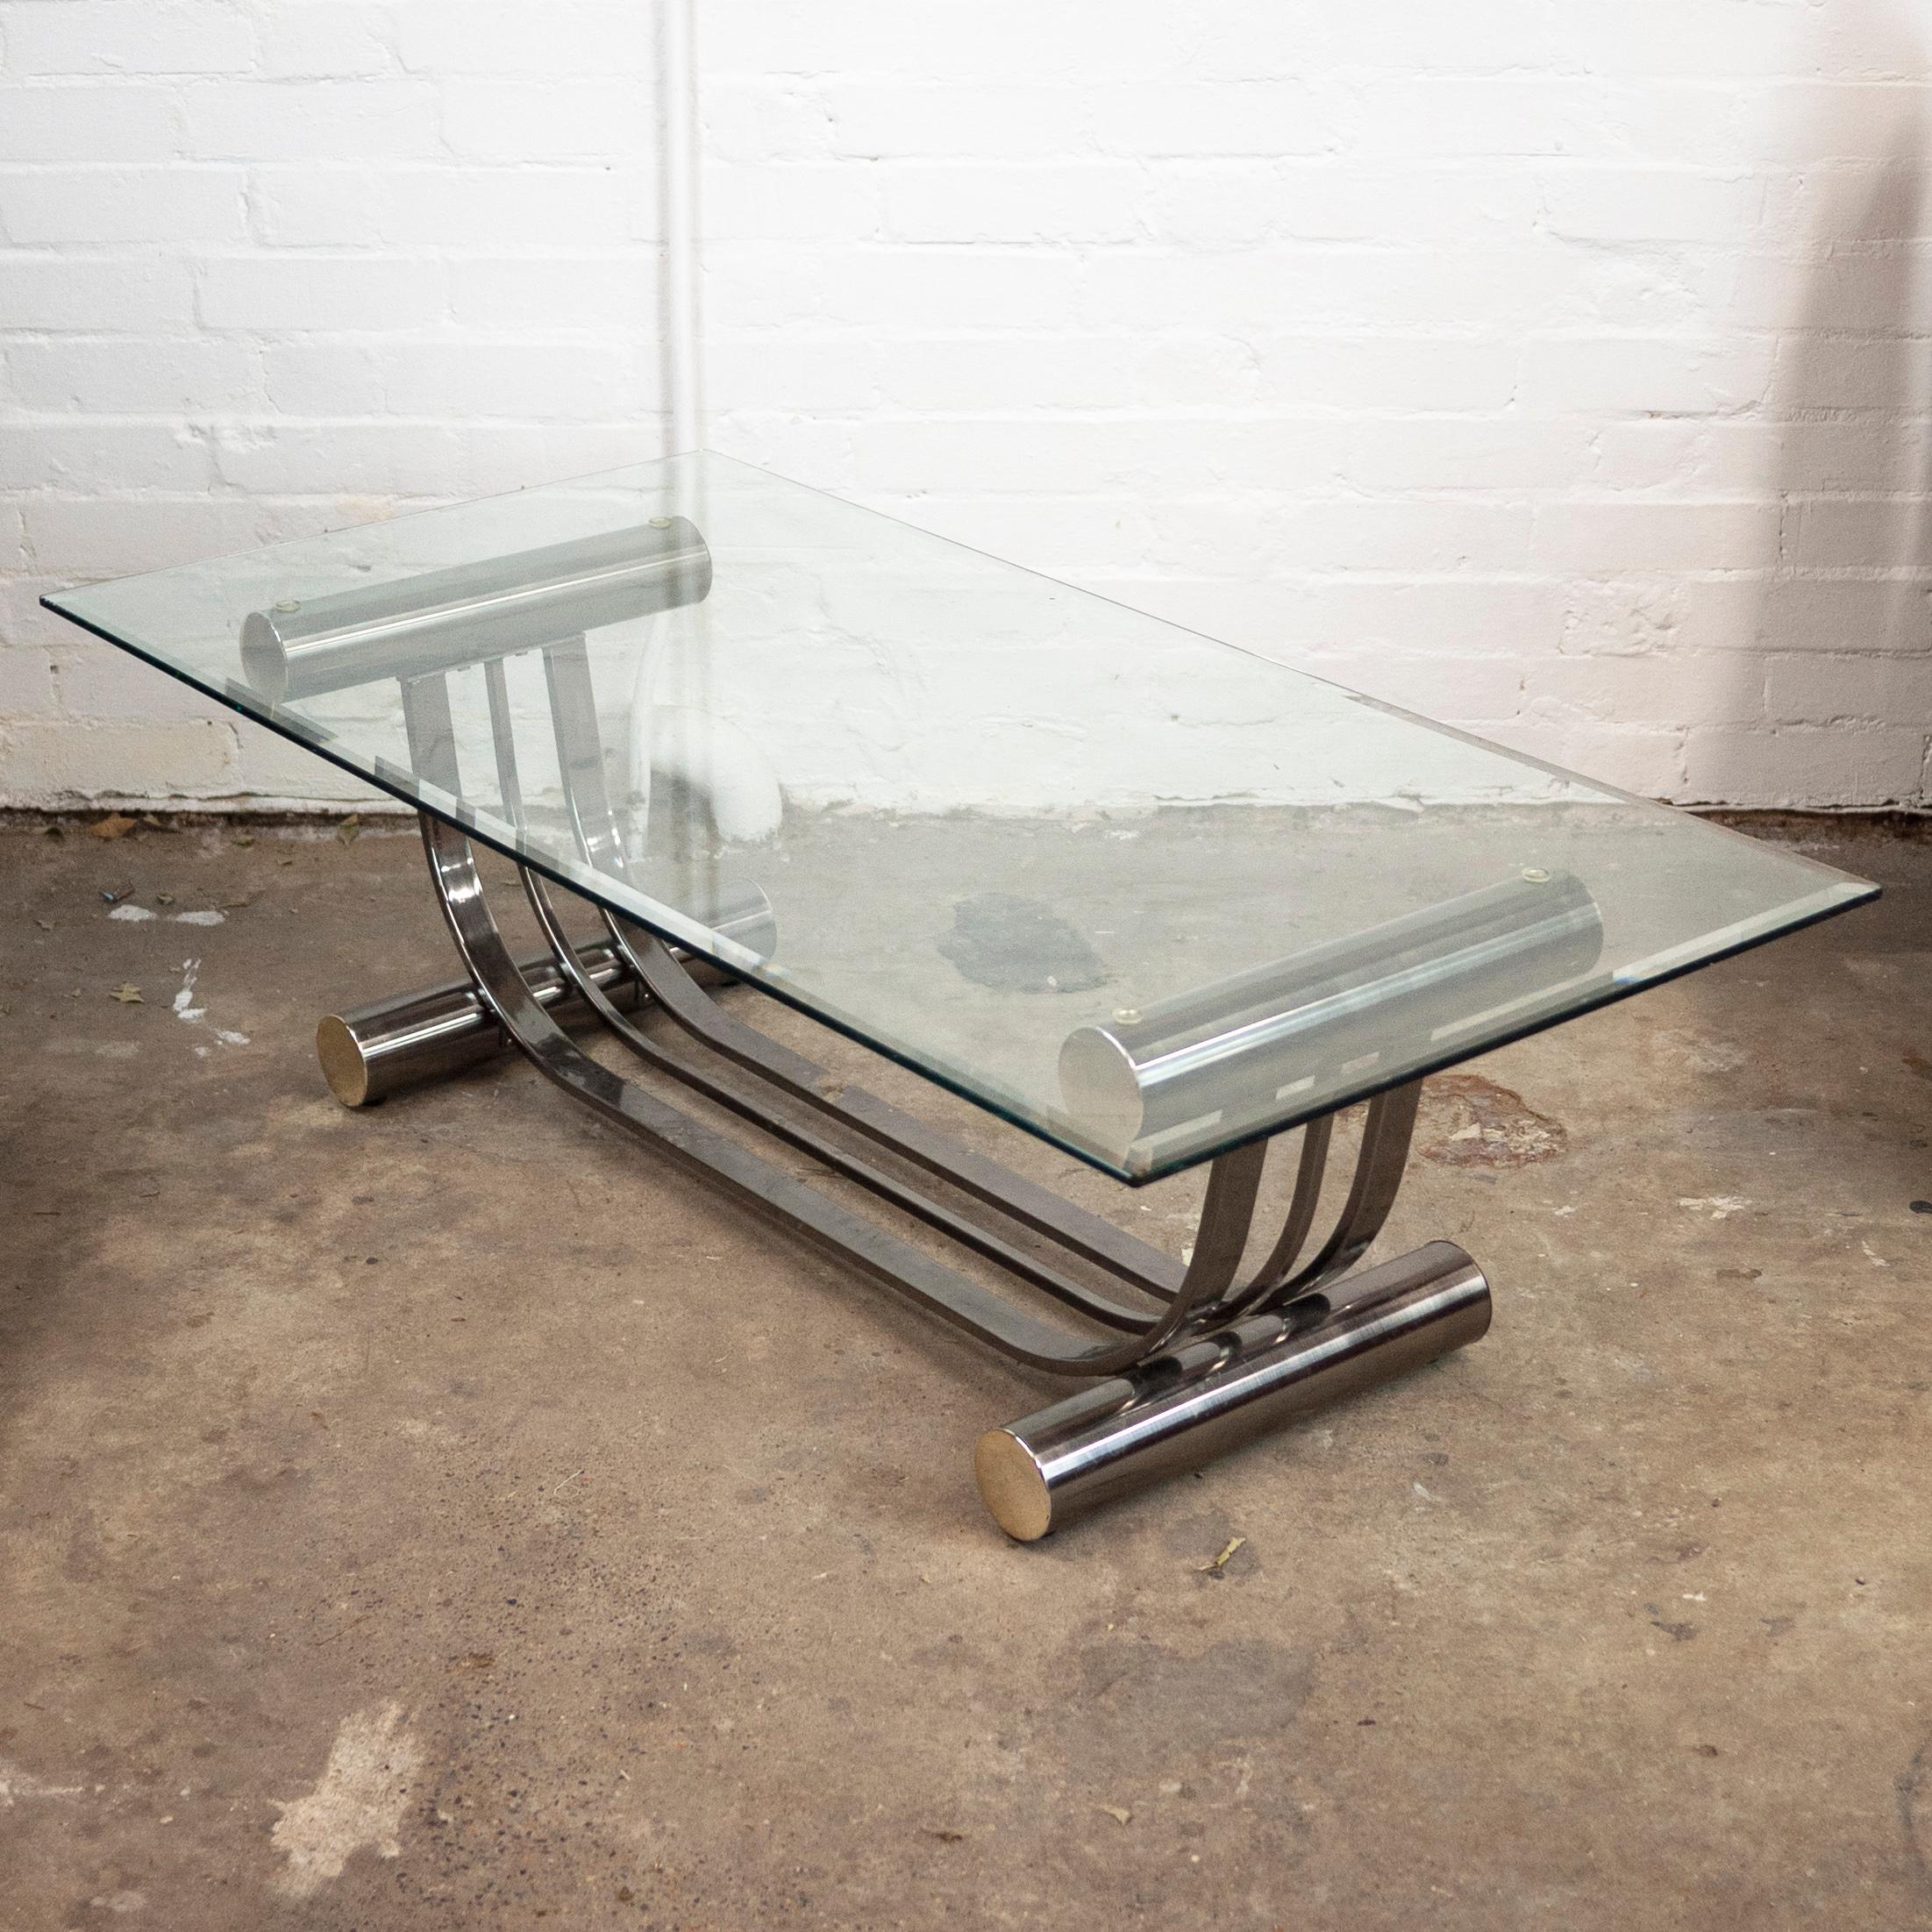 Une table basse rectangulaire en verre des années 1970. La table présente une élégante base chromée en forme d'ellipse avec des supports cylindriques épais.

Concepteur - Inconnu

Fabricant - Design Institute America

Période de conception -